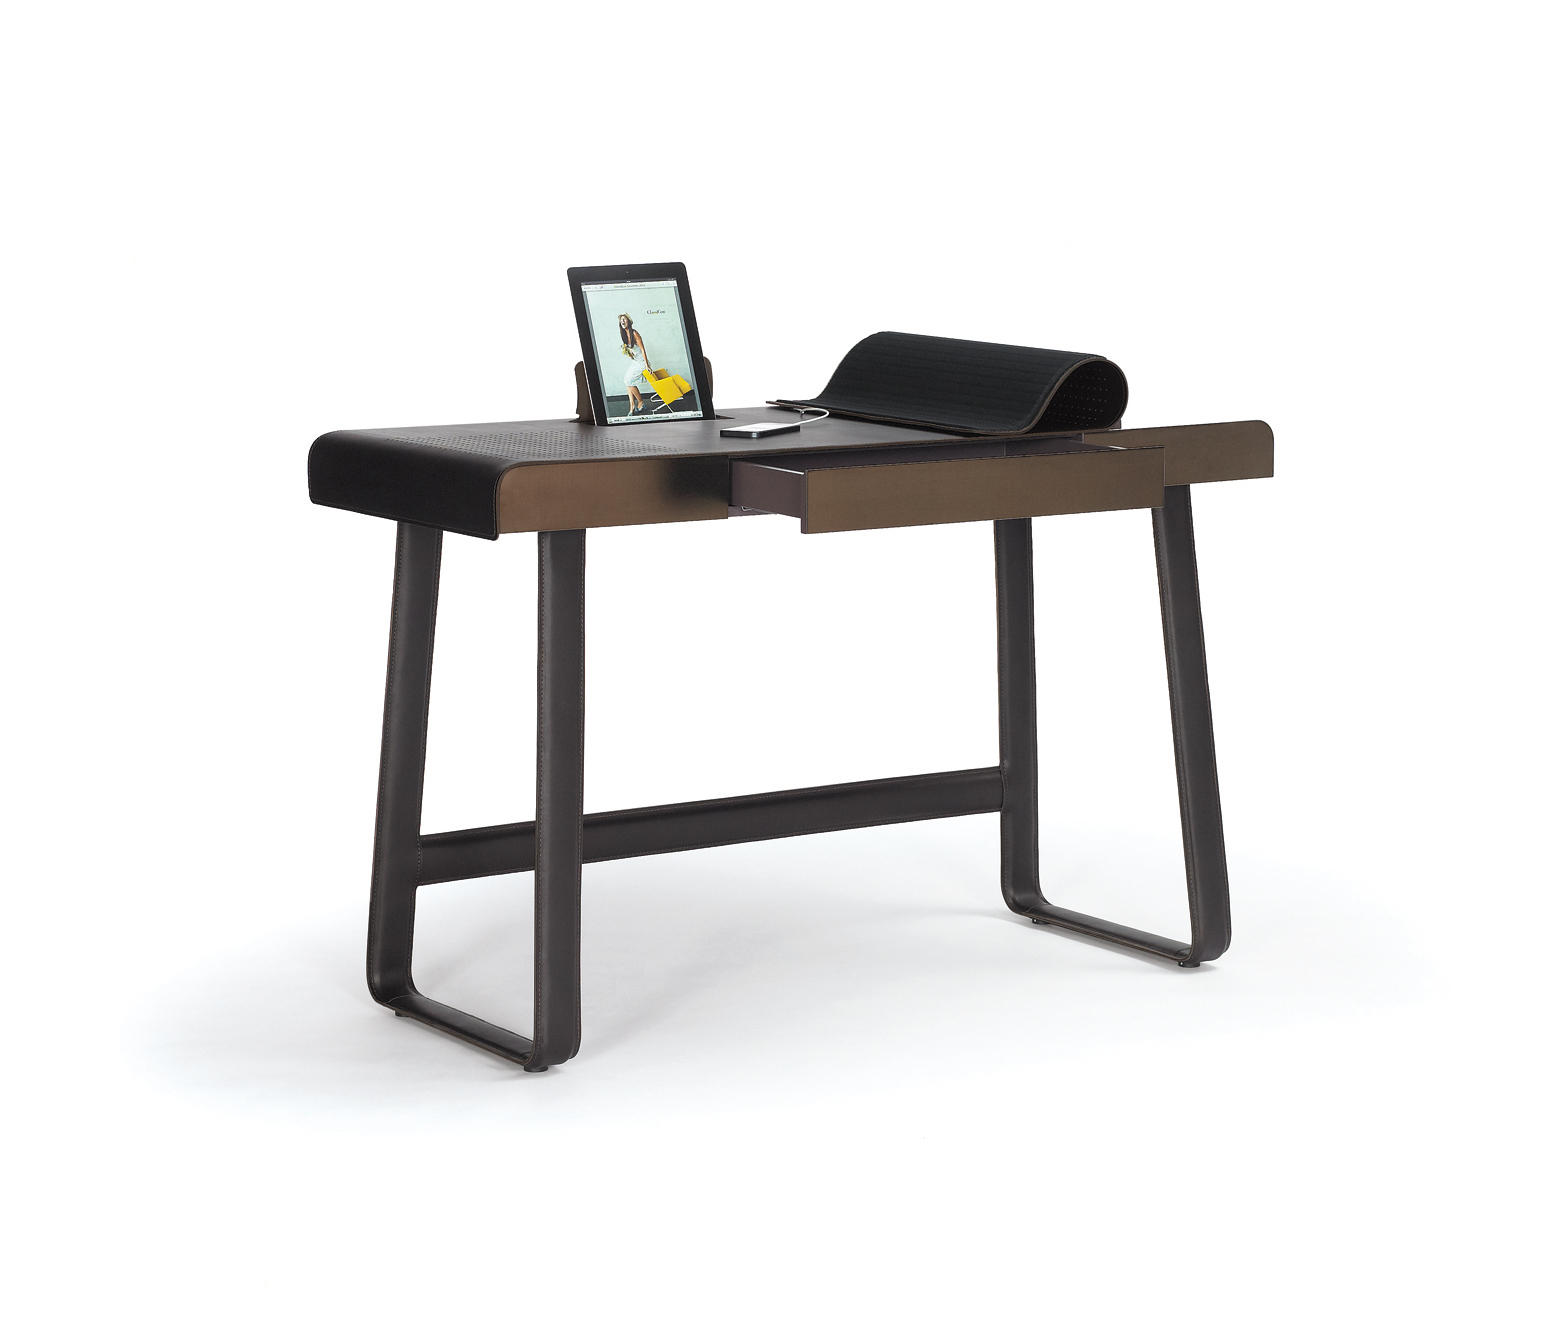 Функциональный столик. Письменный стол от Armani casa. B_Pegasus-Home-Desk-CLASSICON-GMBH-527360-relafa8cea8.